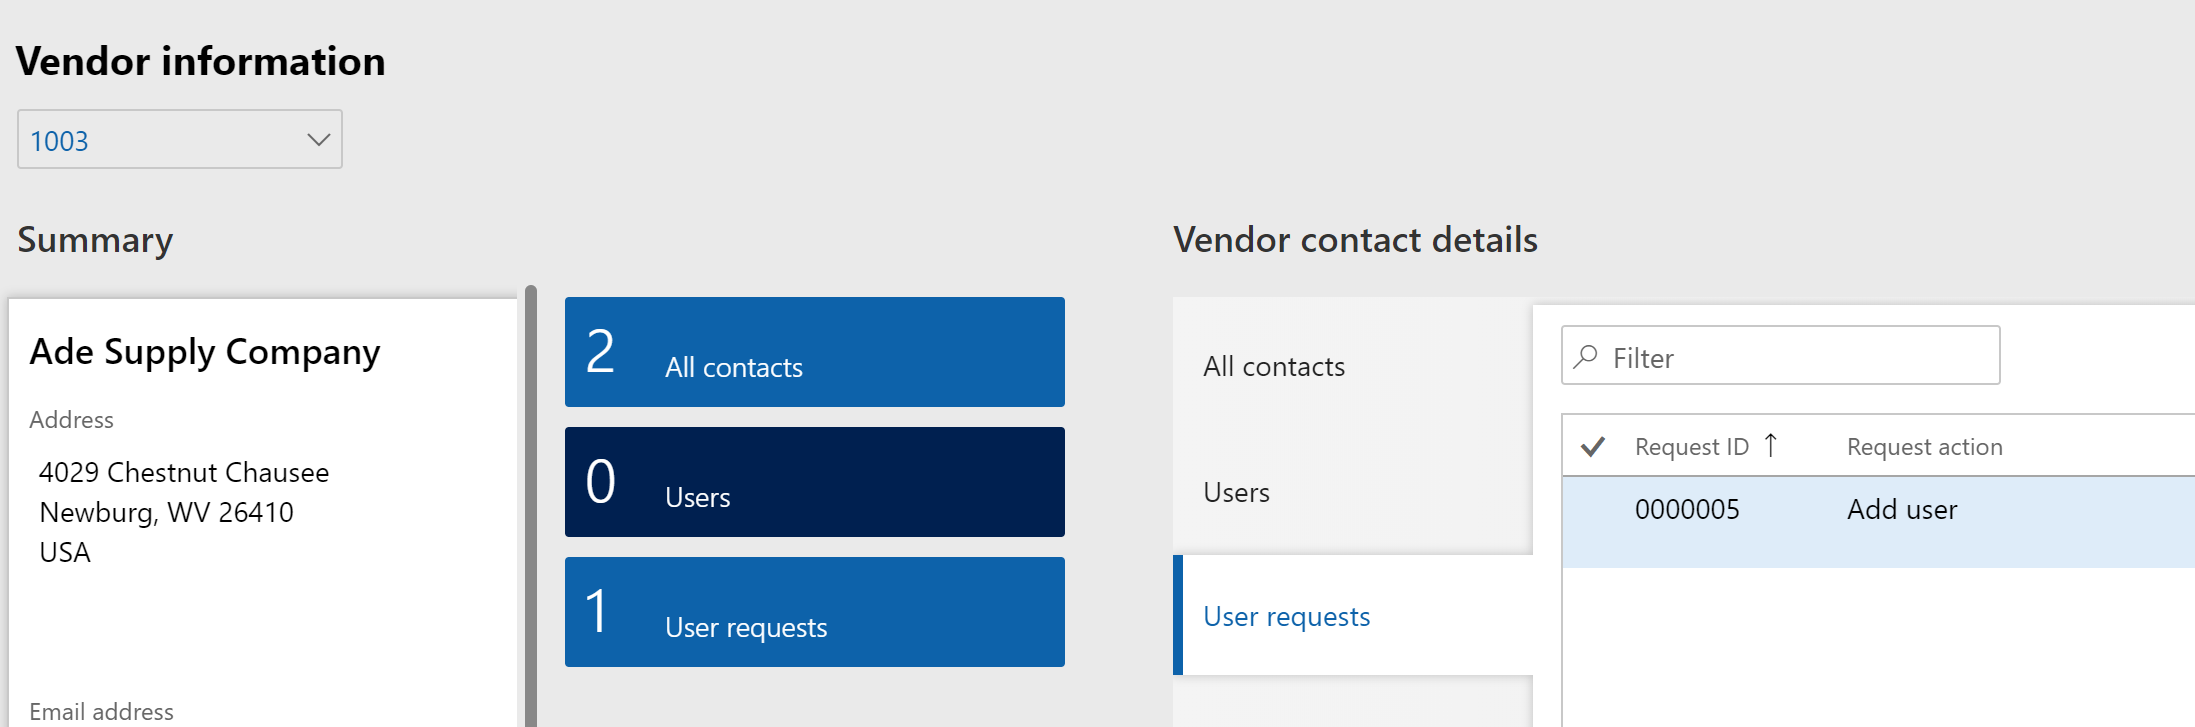 vendor contact details